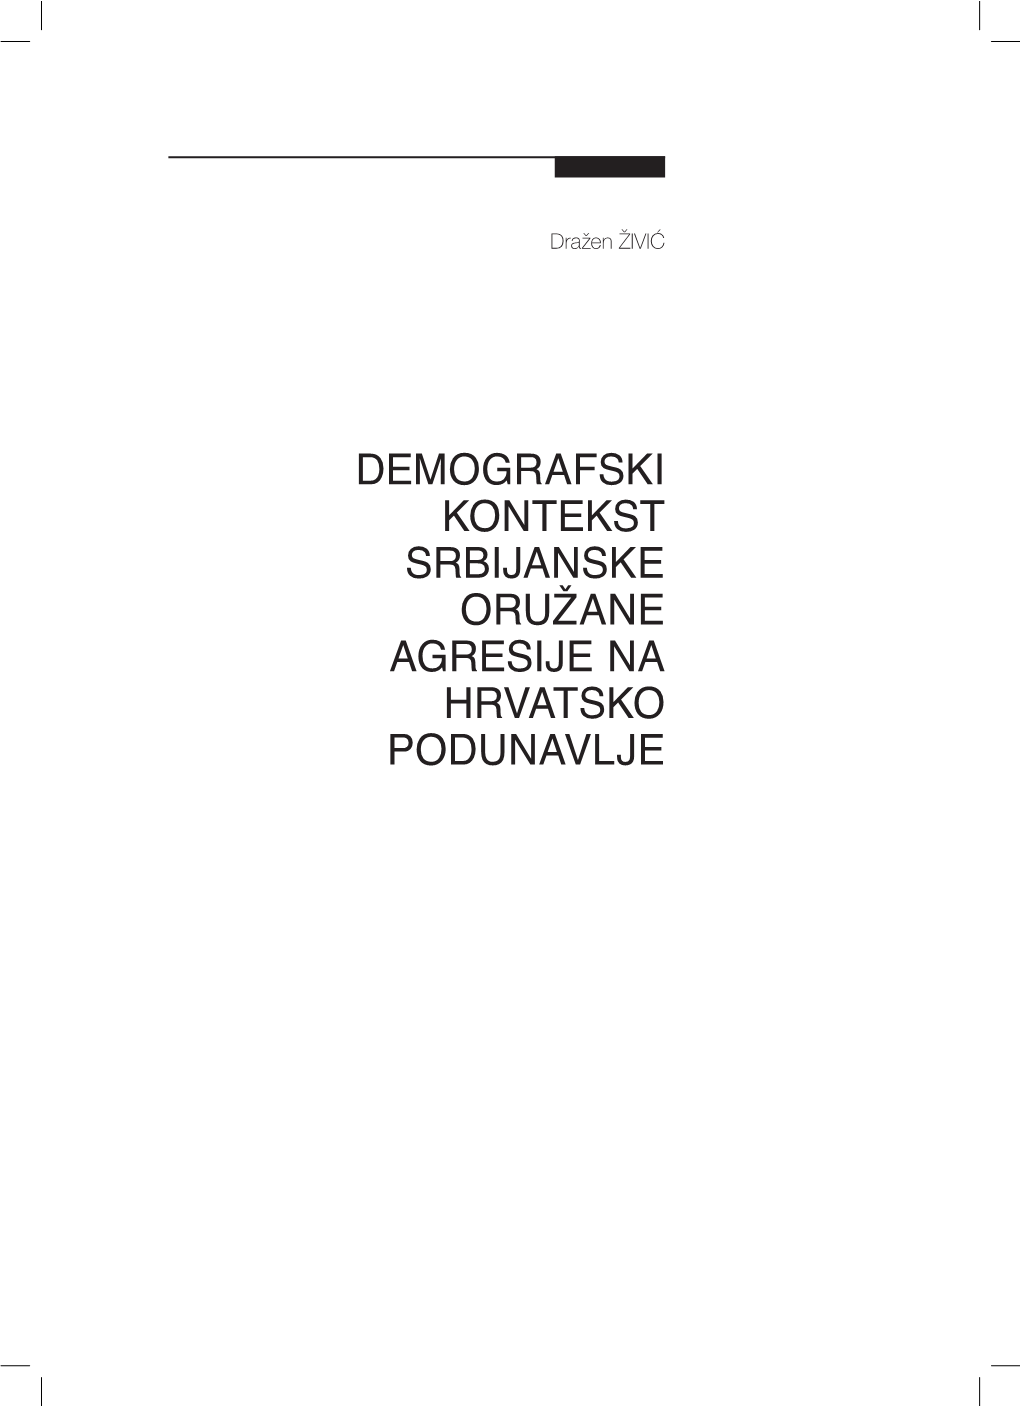 Demografski Kontekst Srbijanske Oružane Agresije Na Hrvatsko Podunavlje